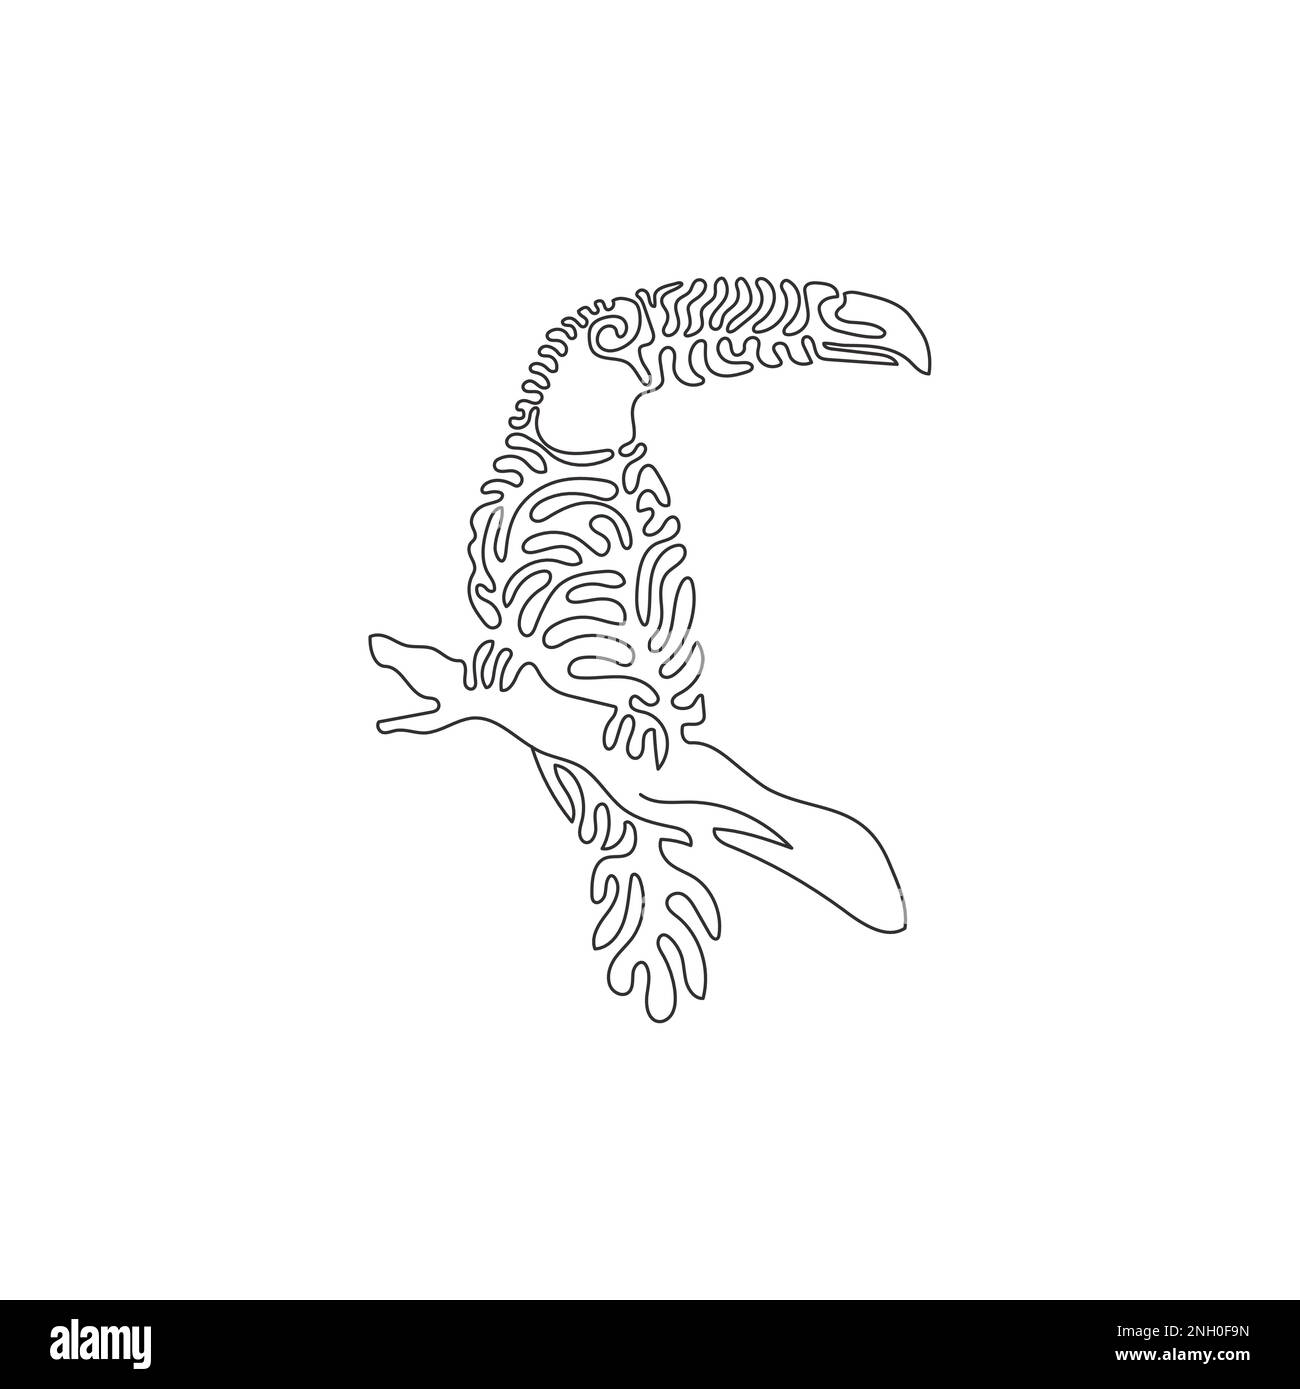 Courbe continue dessin d'une ligne de cute toucan courbe abstraite art Illustration vectorielle à trait unique d'un joli toucan pour logo Illustration de Vecteur